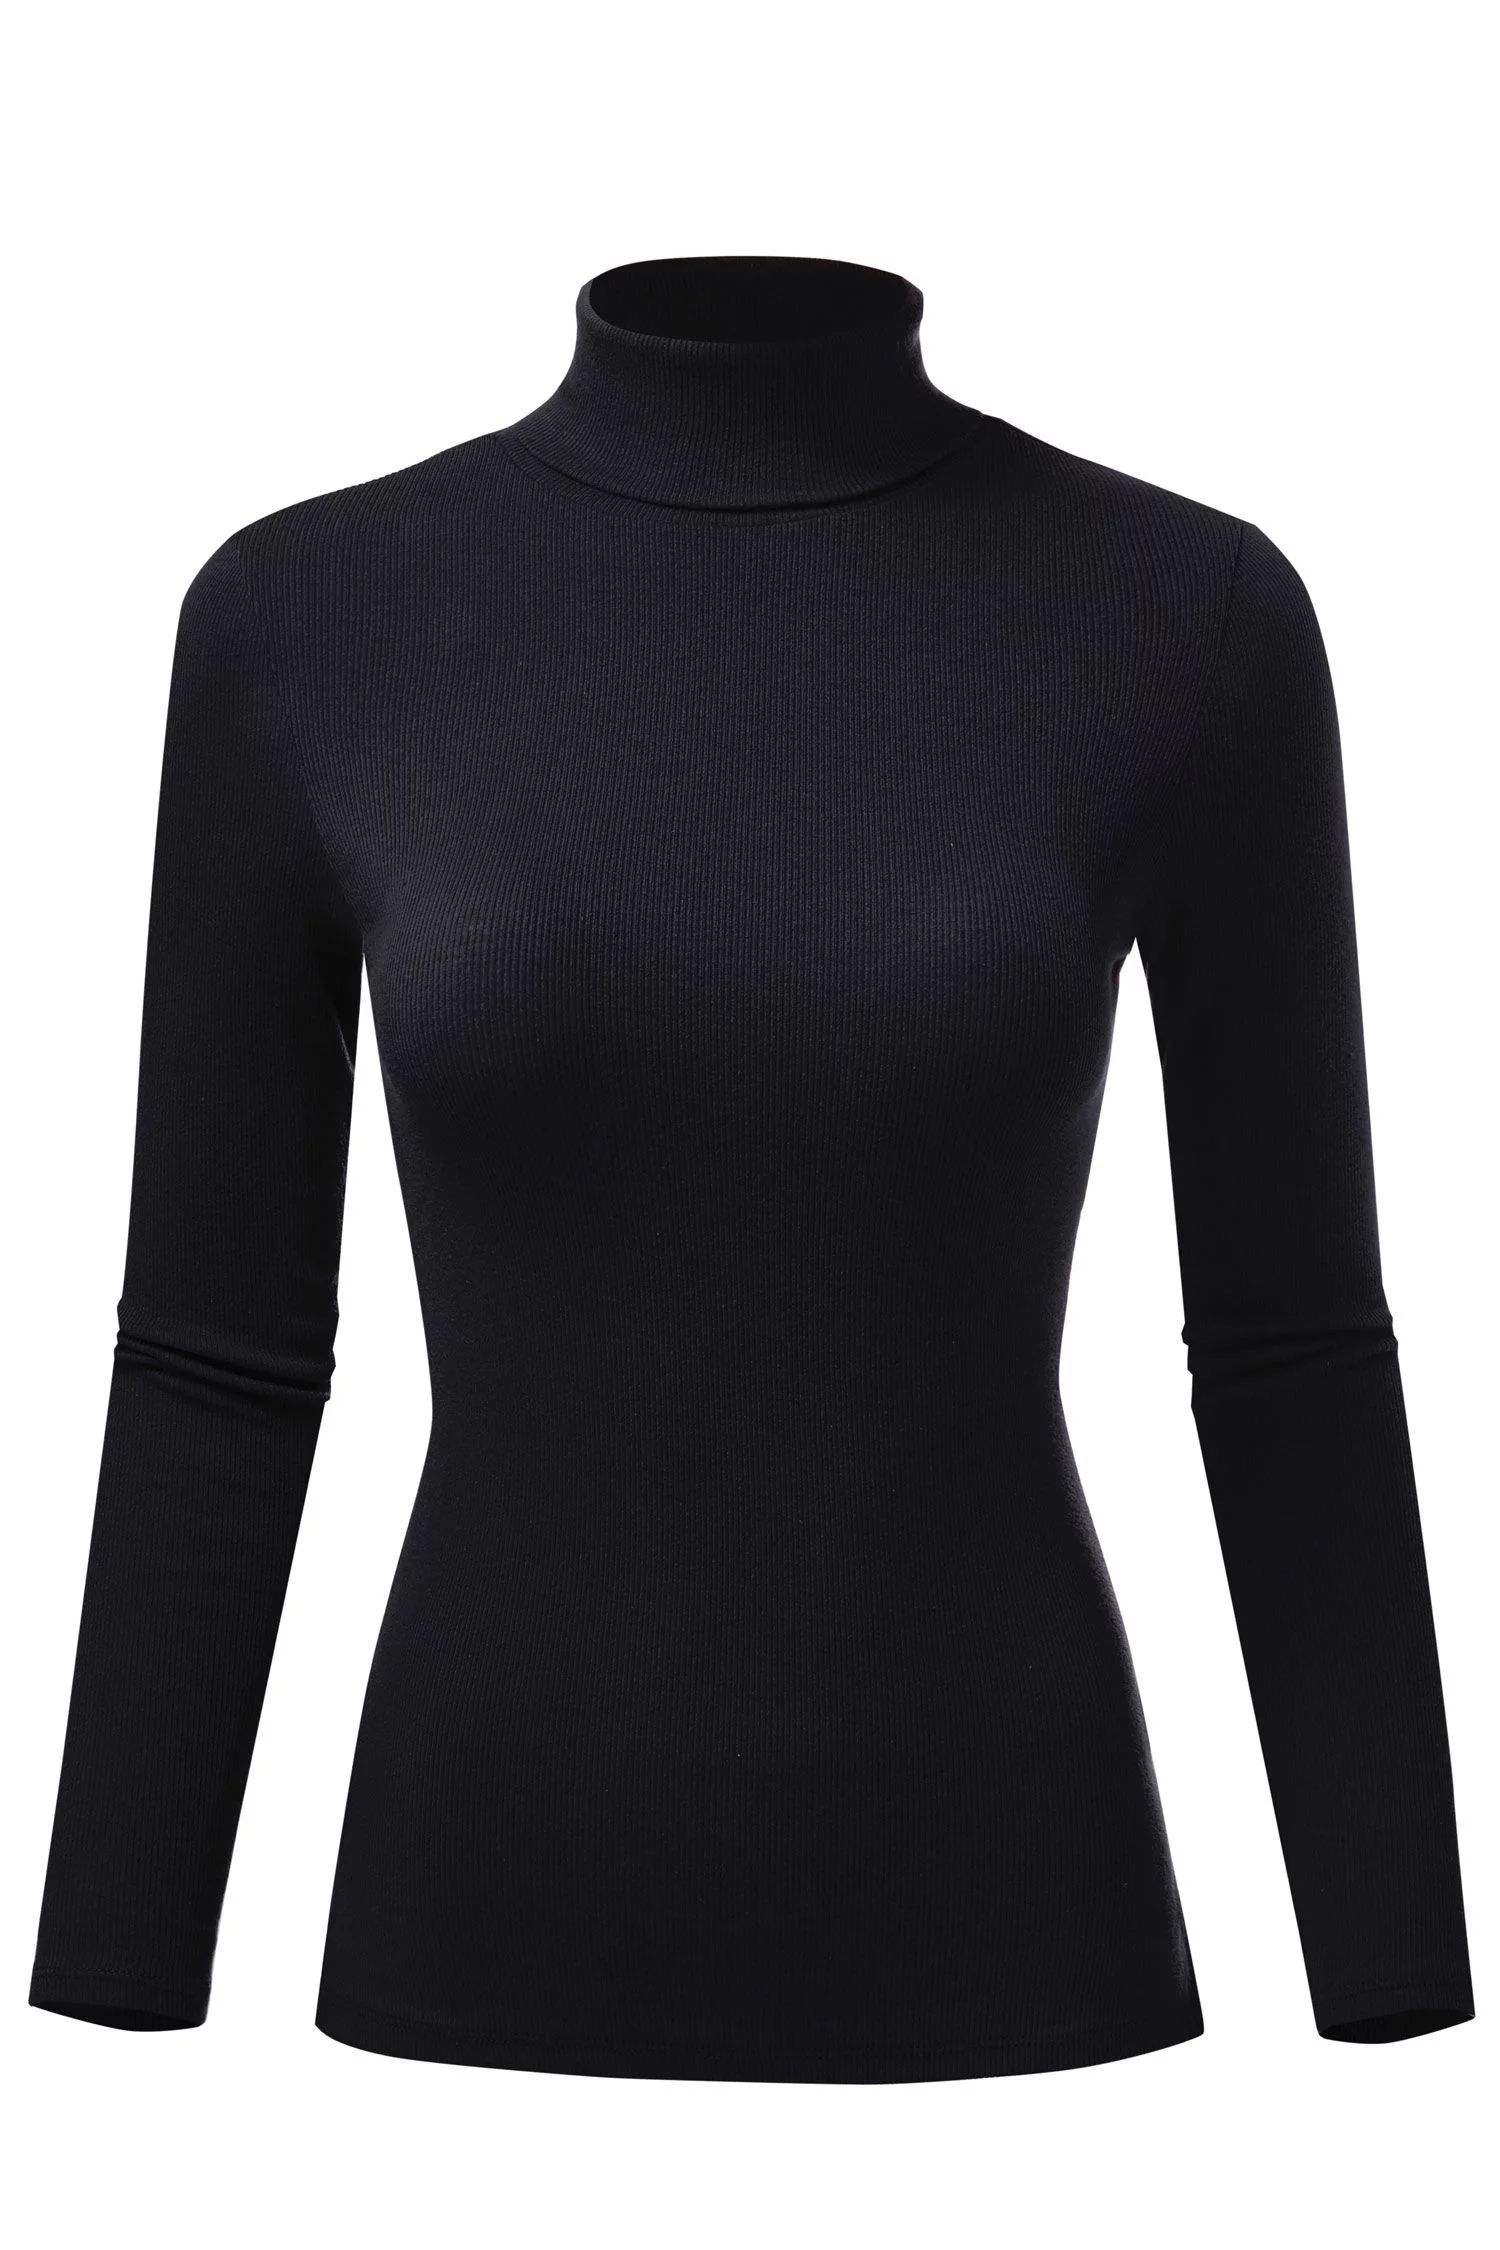 FashionMille Women's Ribbed Slim Fit Lightweight Long Sleeve Turtleneck Sweater - Walmart.com | Walmart (US)